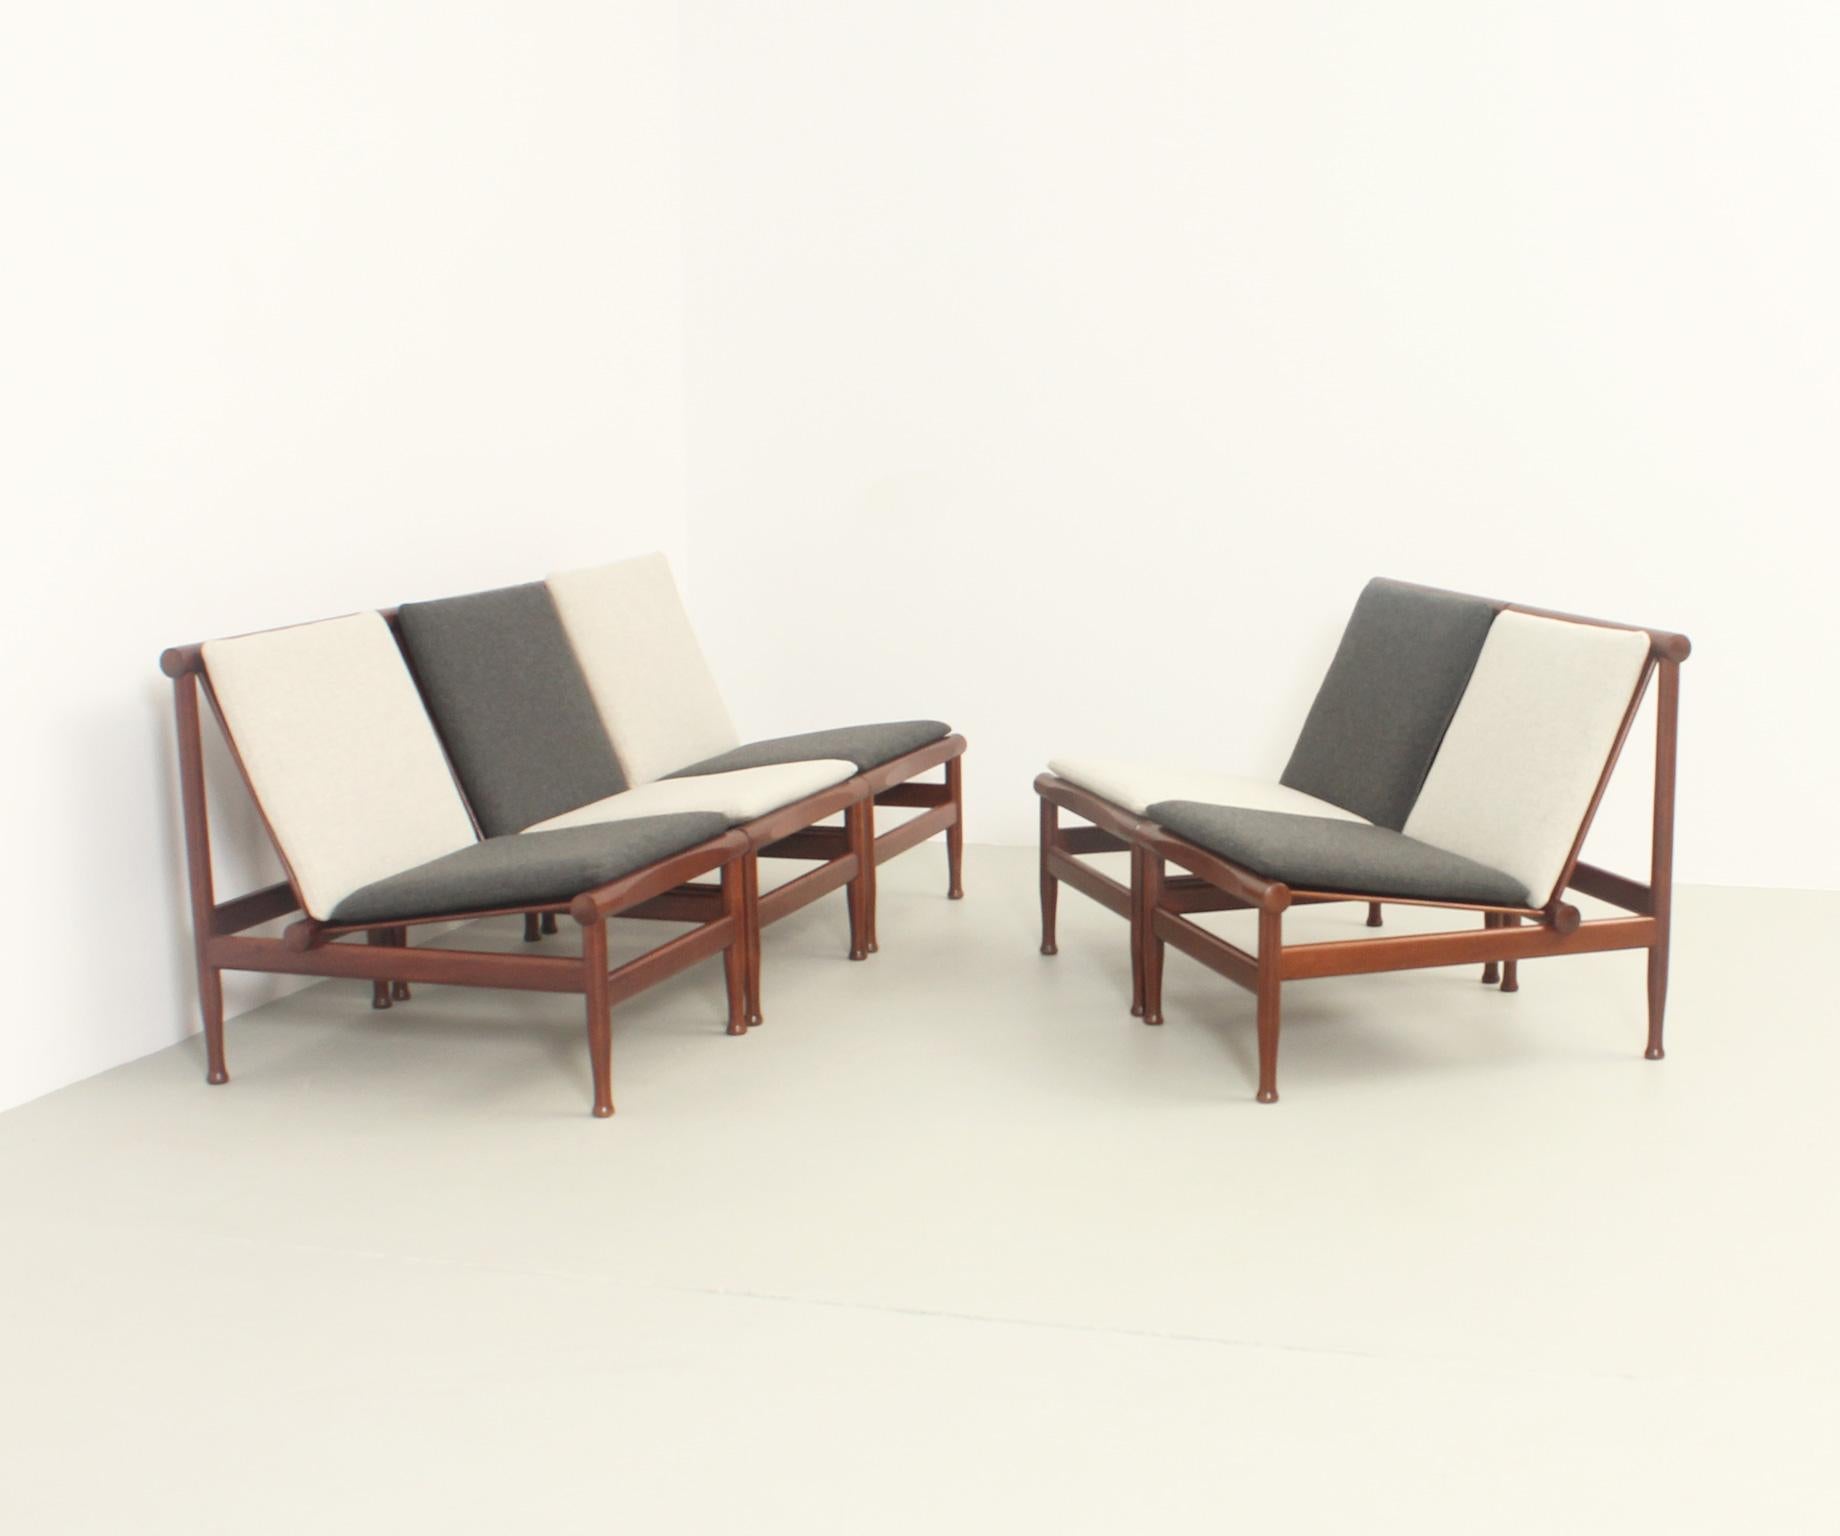 Cinq fauteuils japonais ou modèle 501 conçus dans les années 1950 par Kai Lyngfeldt Larsen pour Søborg Møbler, Danemark. Structure en bois de teck et nouveaux coussins libres garnis de tissu Kvadrat en deux tons. Voir aussi les tables basses et les